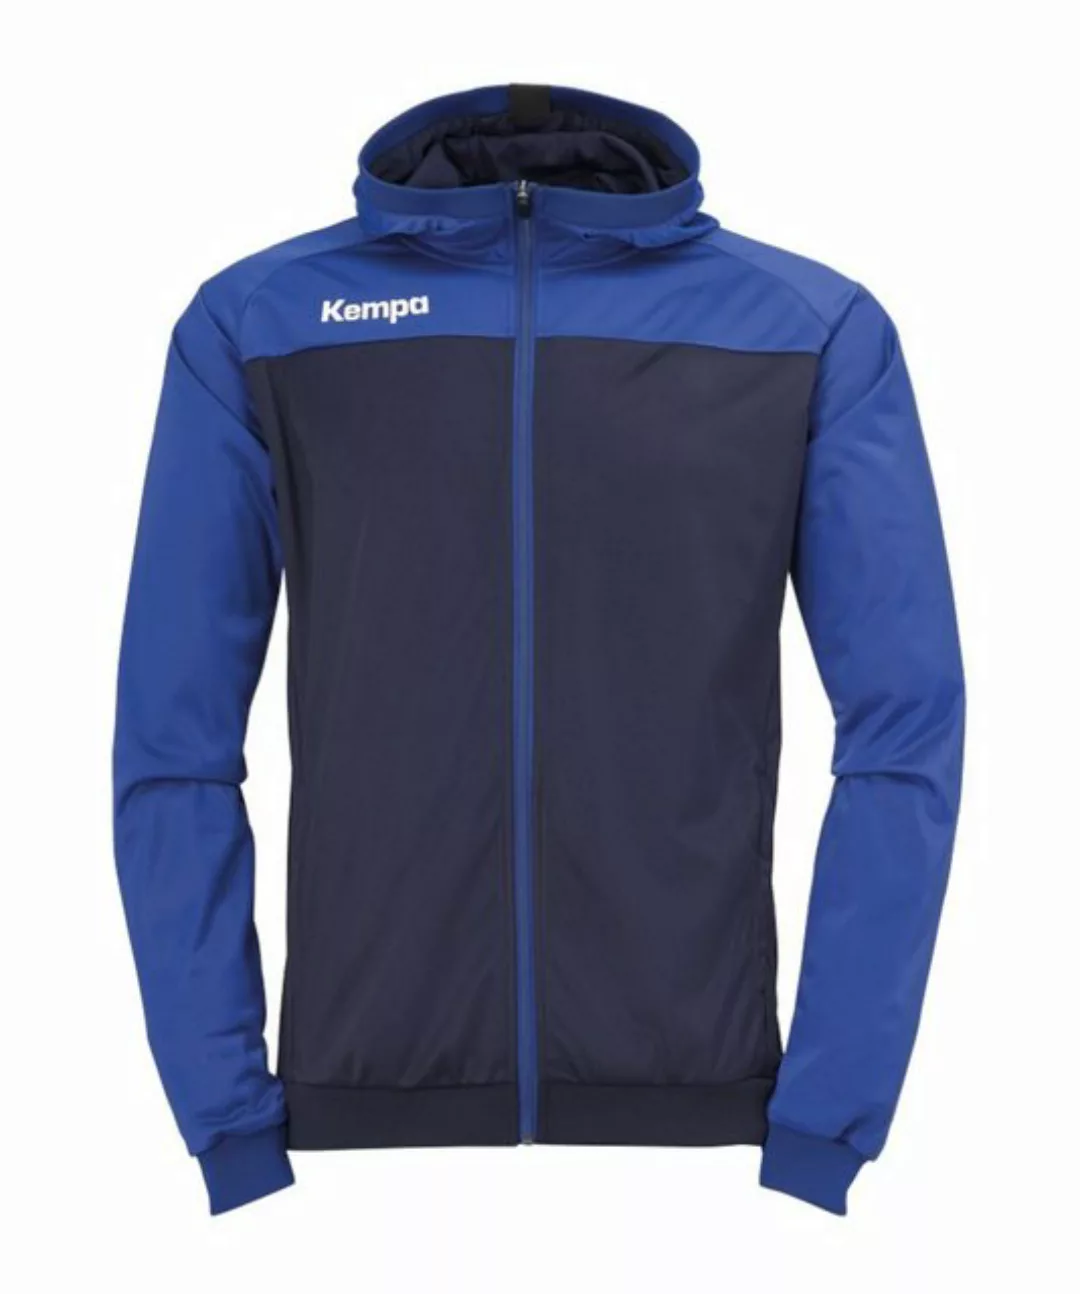 Kempa Sweatjacke Prime Multi Jacke Dunkel günstig online kaufen